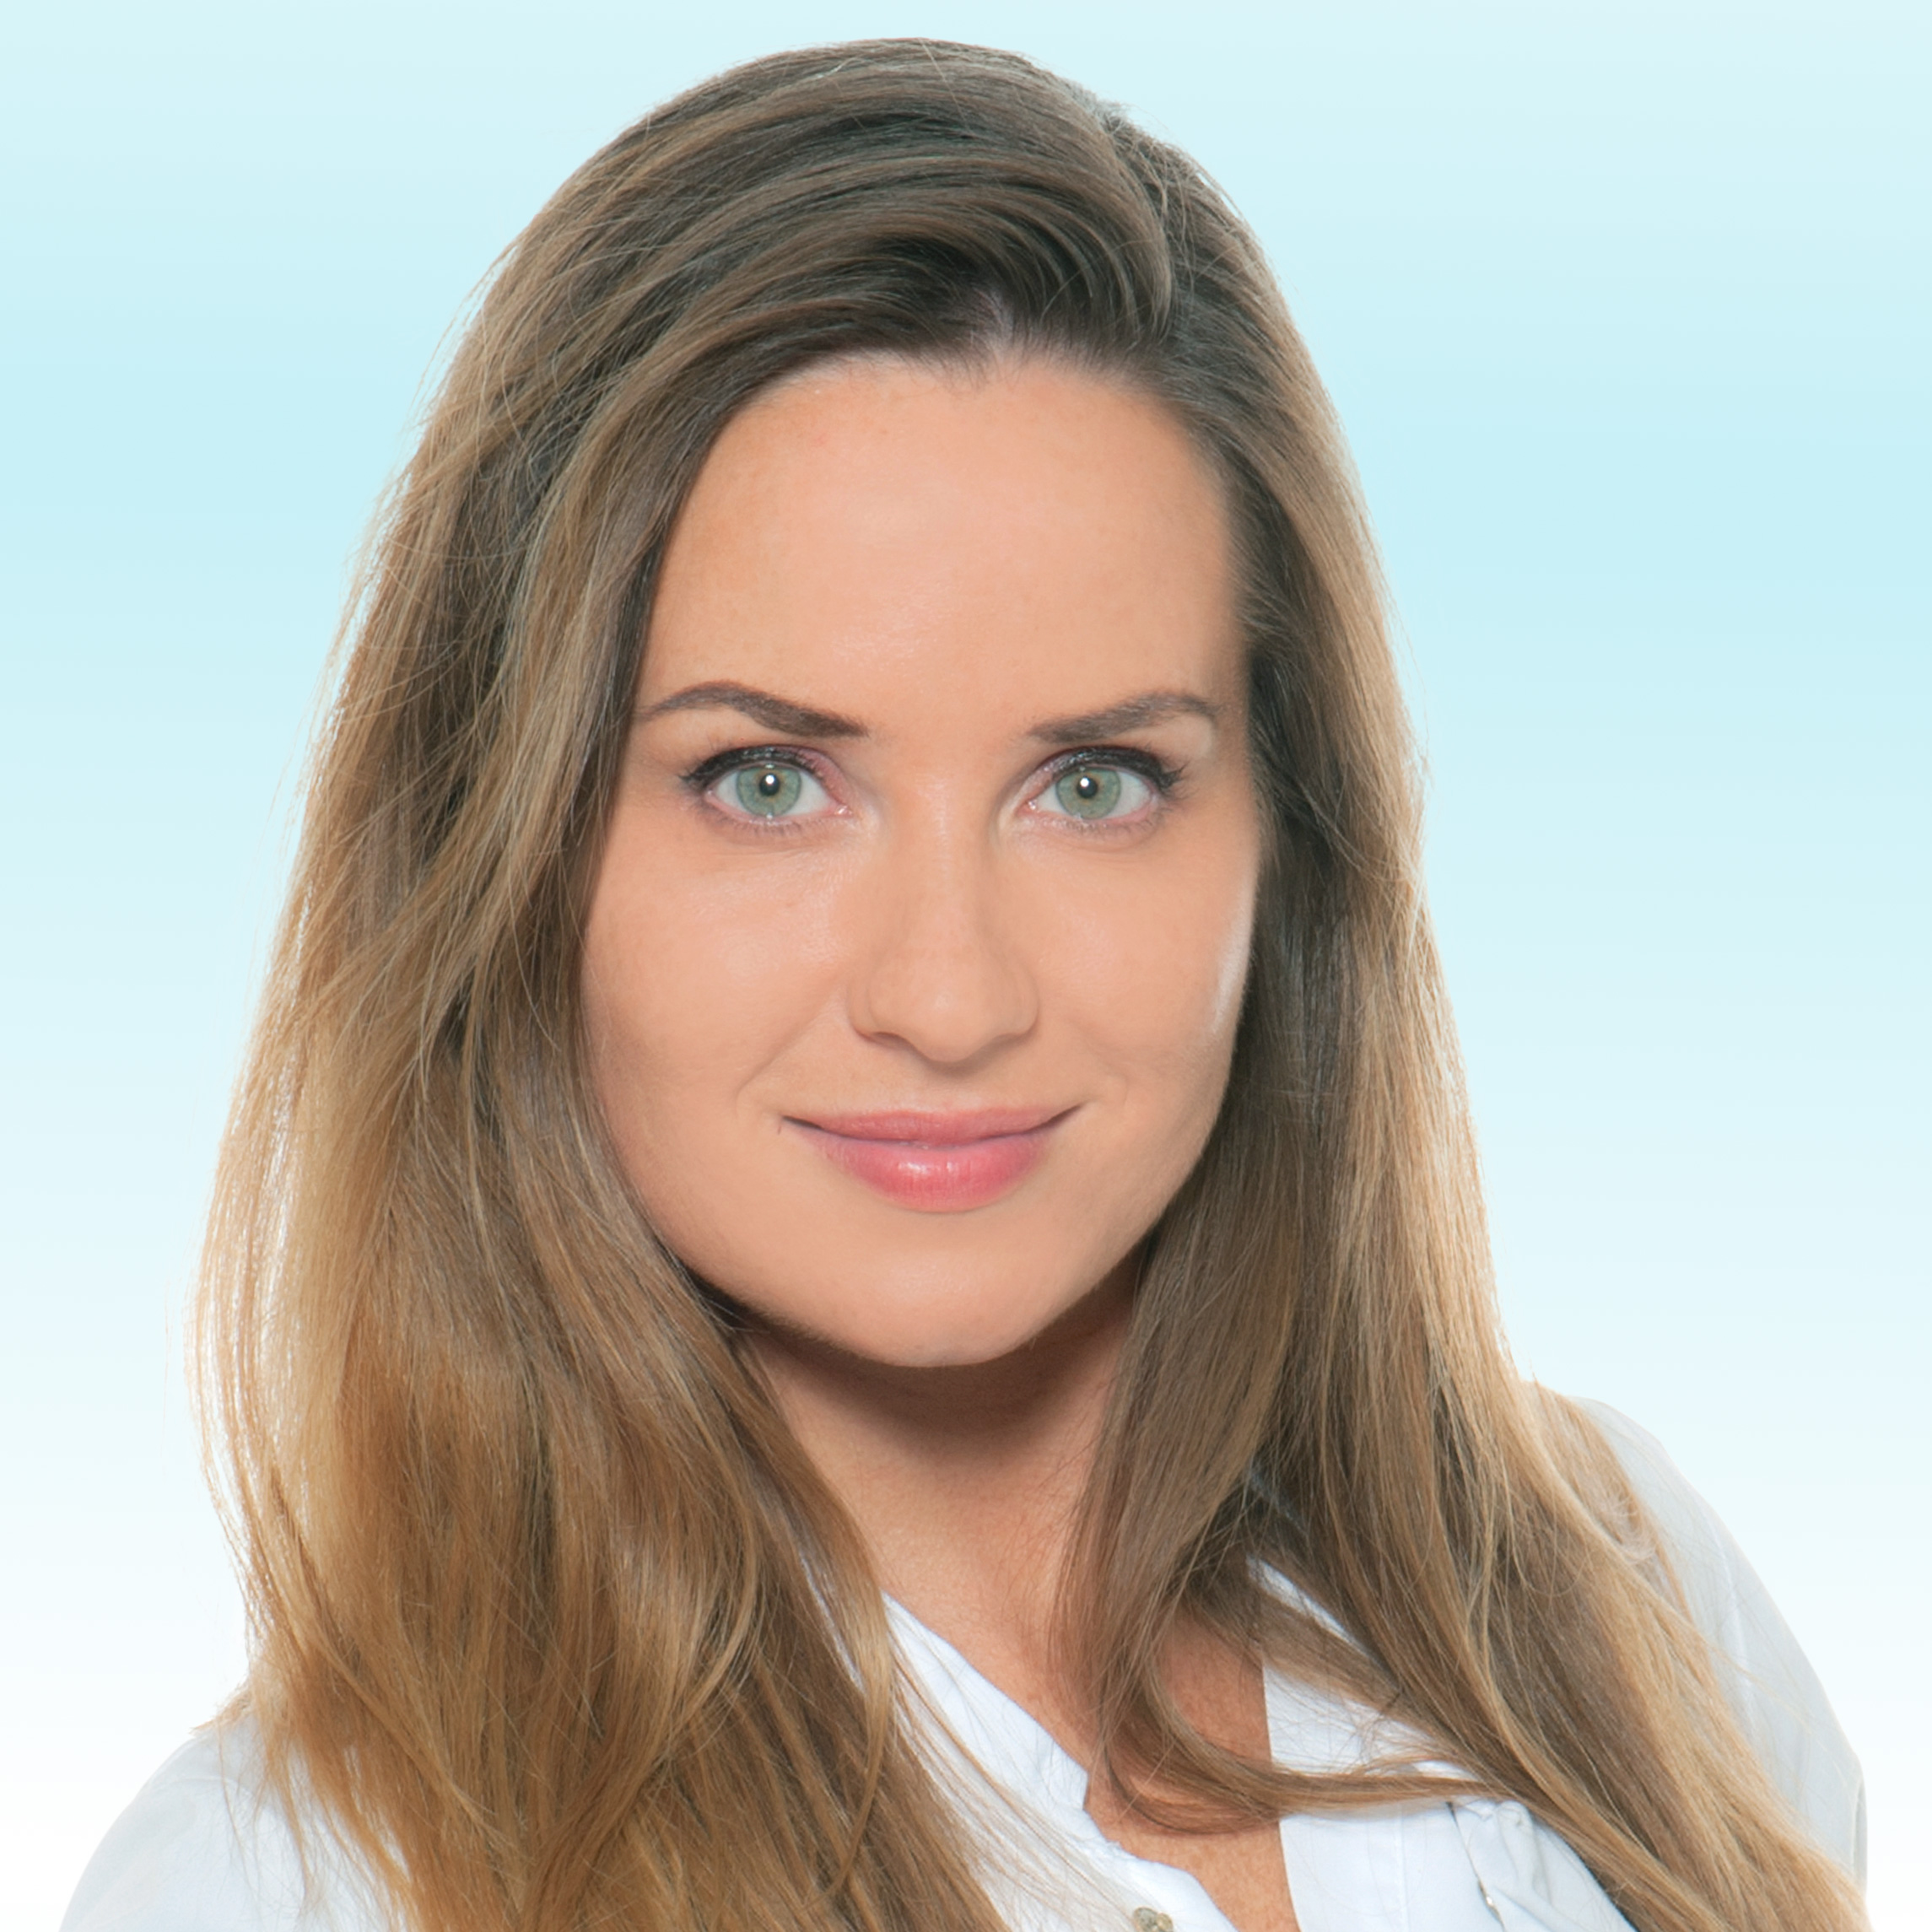 Dermatologue, Dr. Franziska Wenz